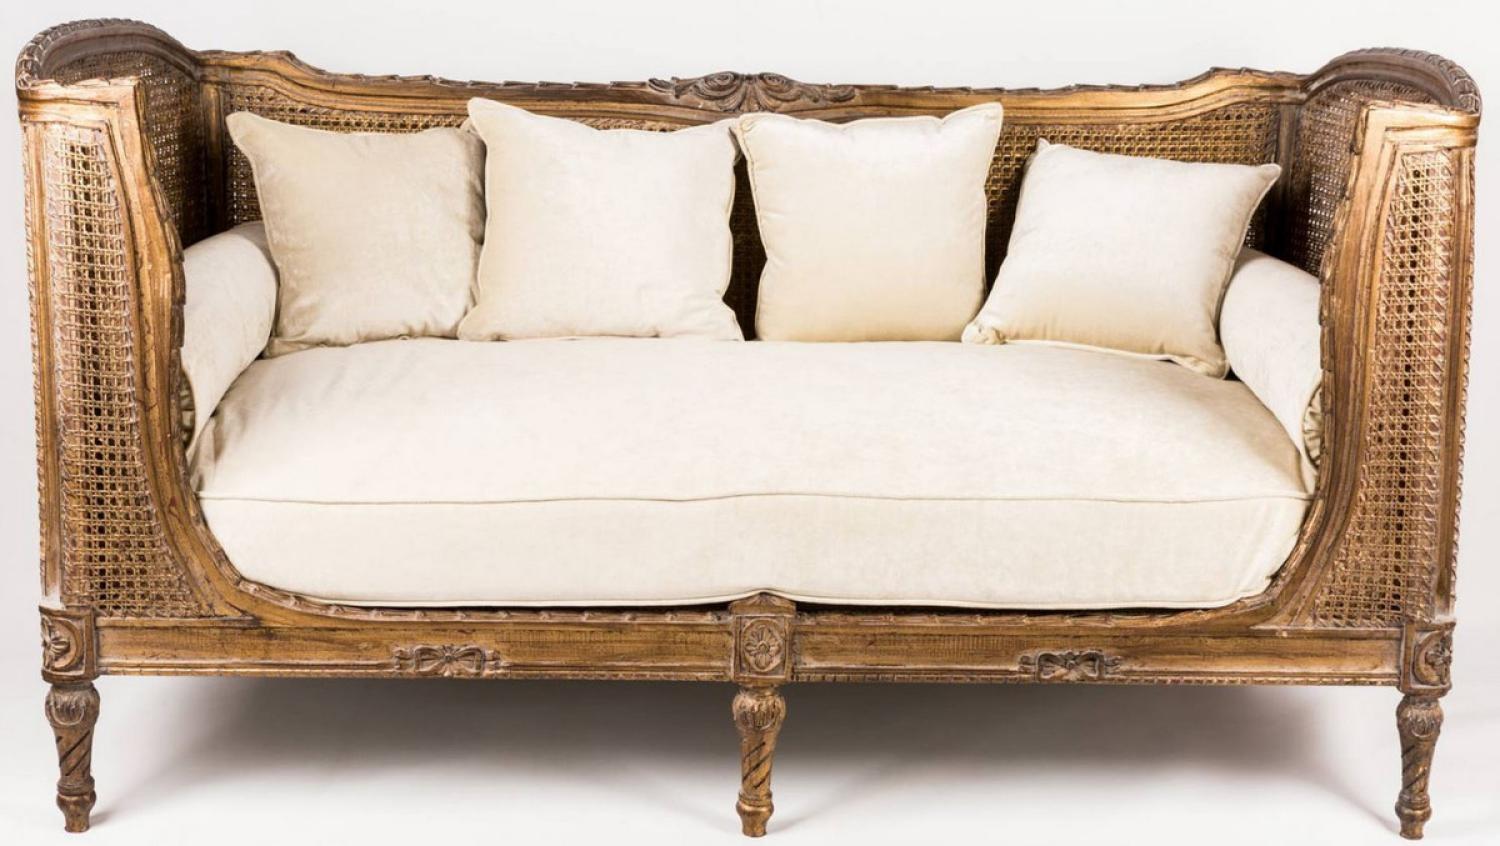 Casa Padrino Luxus Barock Sofa mit Kissen Braun / Elfenbeinfarben 187 x 89 x H. 103 cm - Handgefertigtes Sofa im Antik Stil - Wohnzimmer Möbel Bild 1